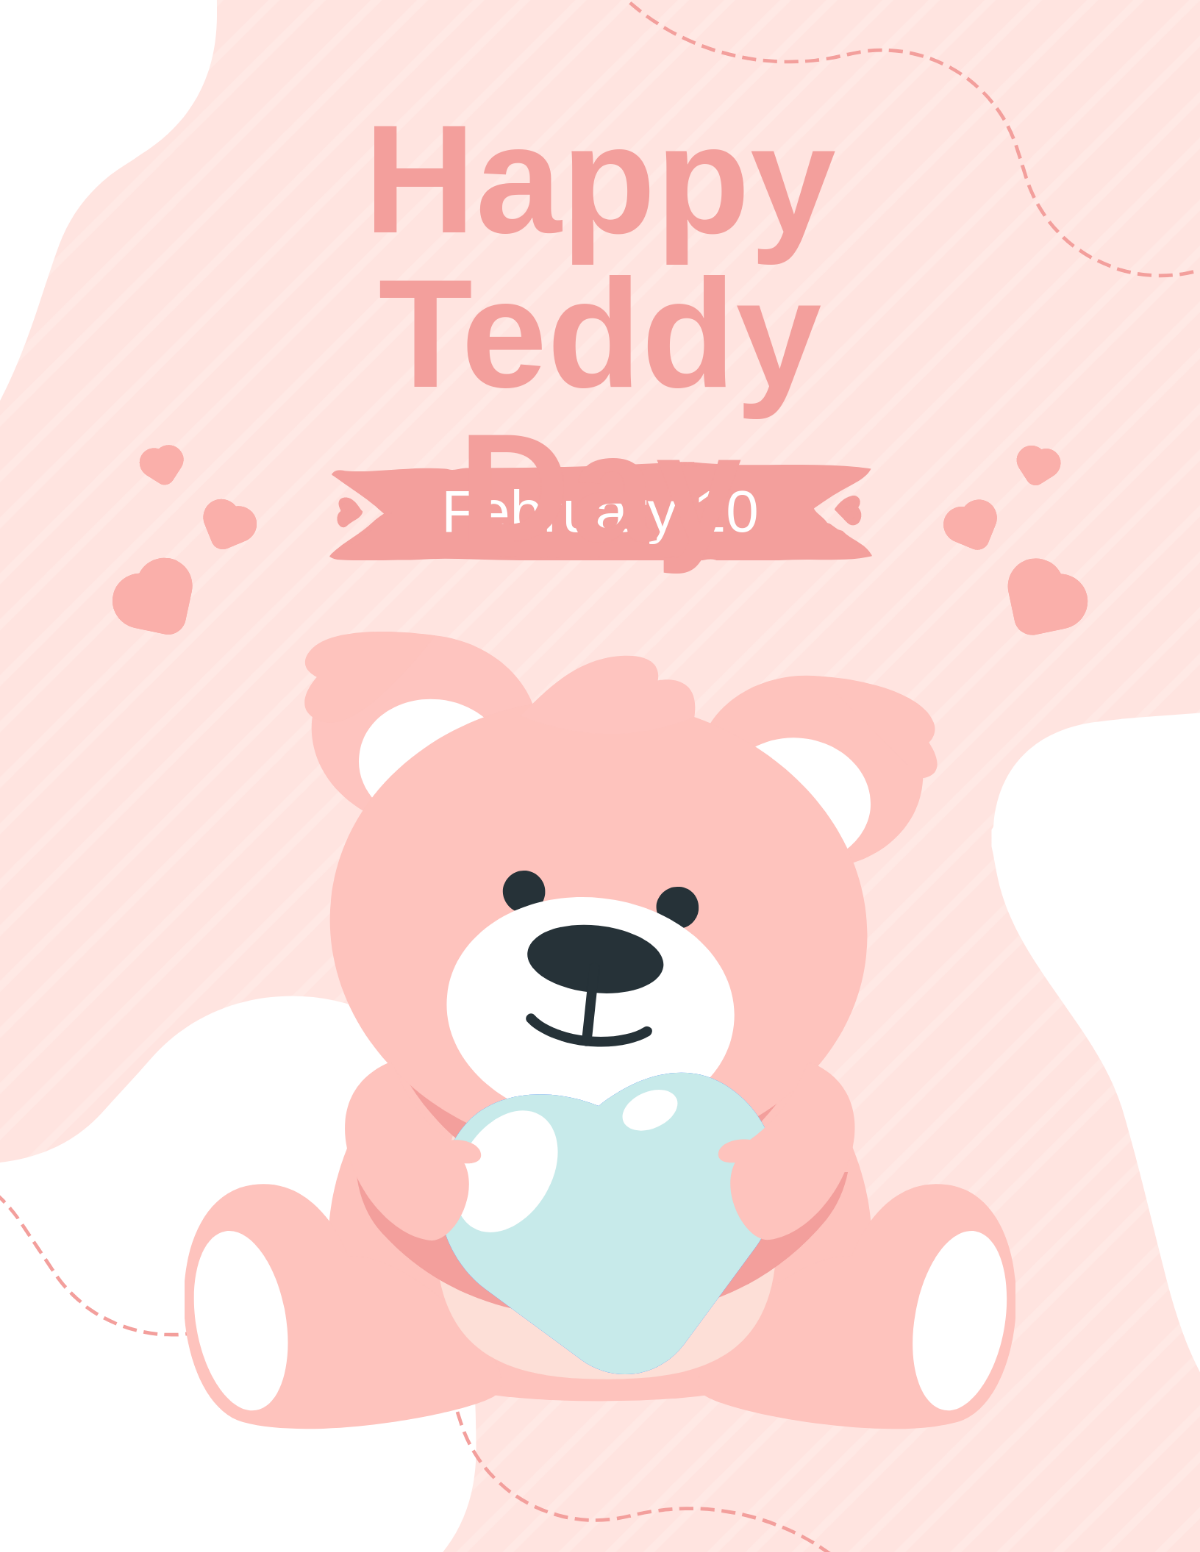 Happy Teddy Day Flyer